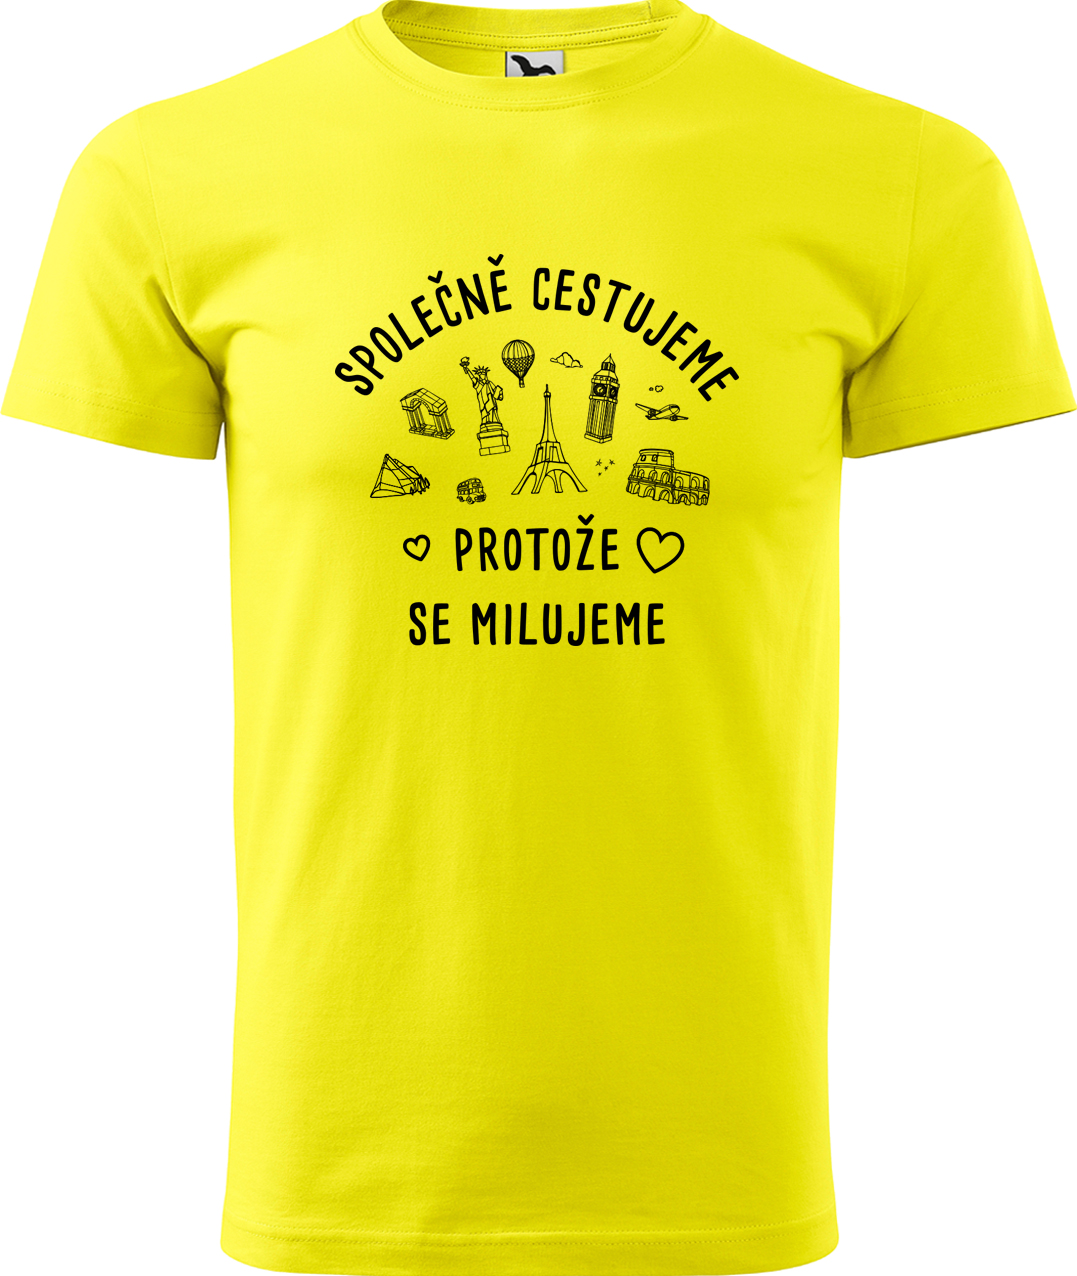 Pánské cestovatelské tričko - Společně cestujeme protože se milujeme Velikost: L, Barva: Žlutá (04), Střih: pánský